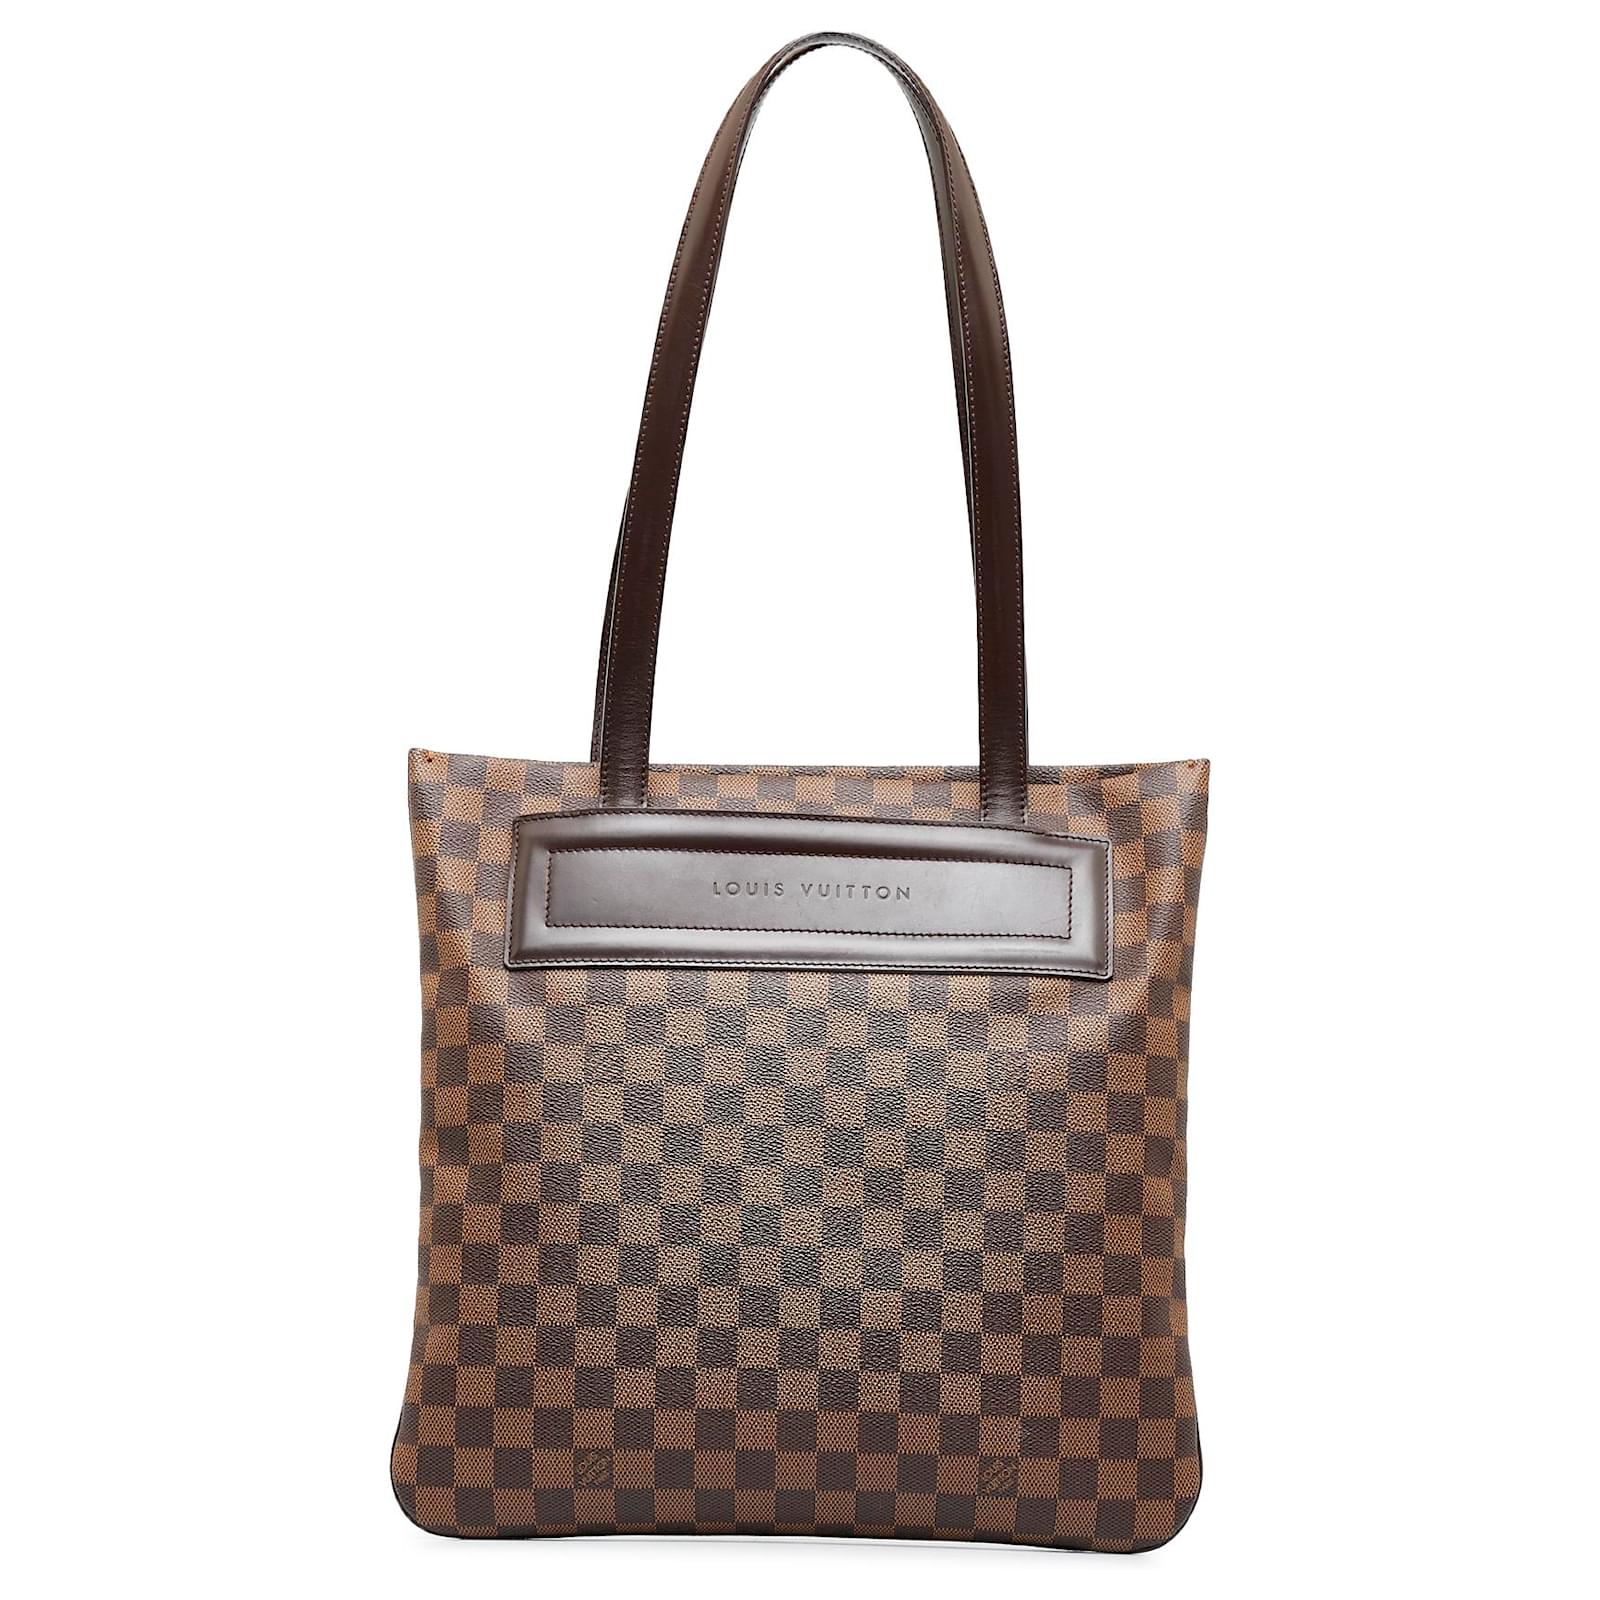 Louis Vuitton Canvas Exterior Bags & Handbags for Women